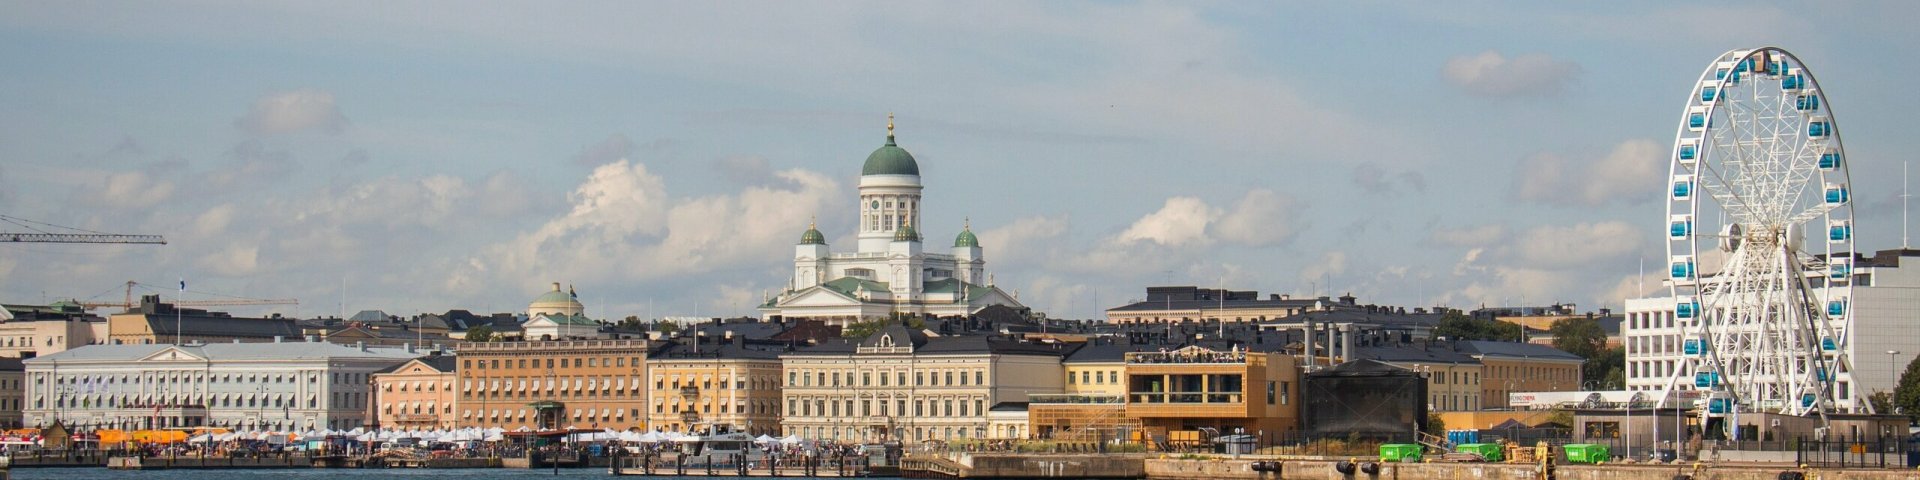 Helsingi linnavaade pastelsetes värvides hoonete ja vaaterattaga.